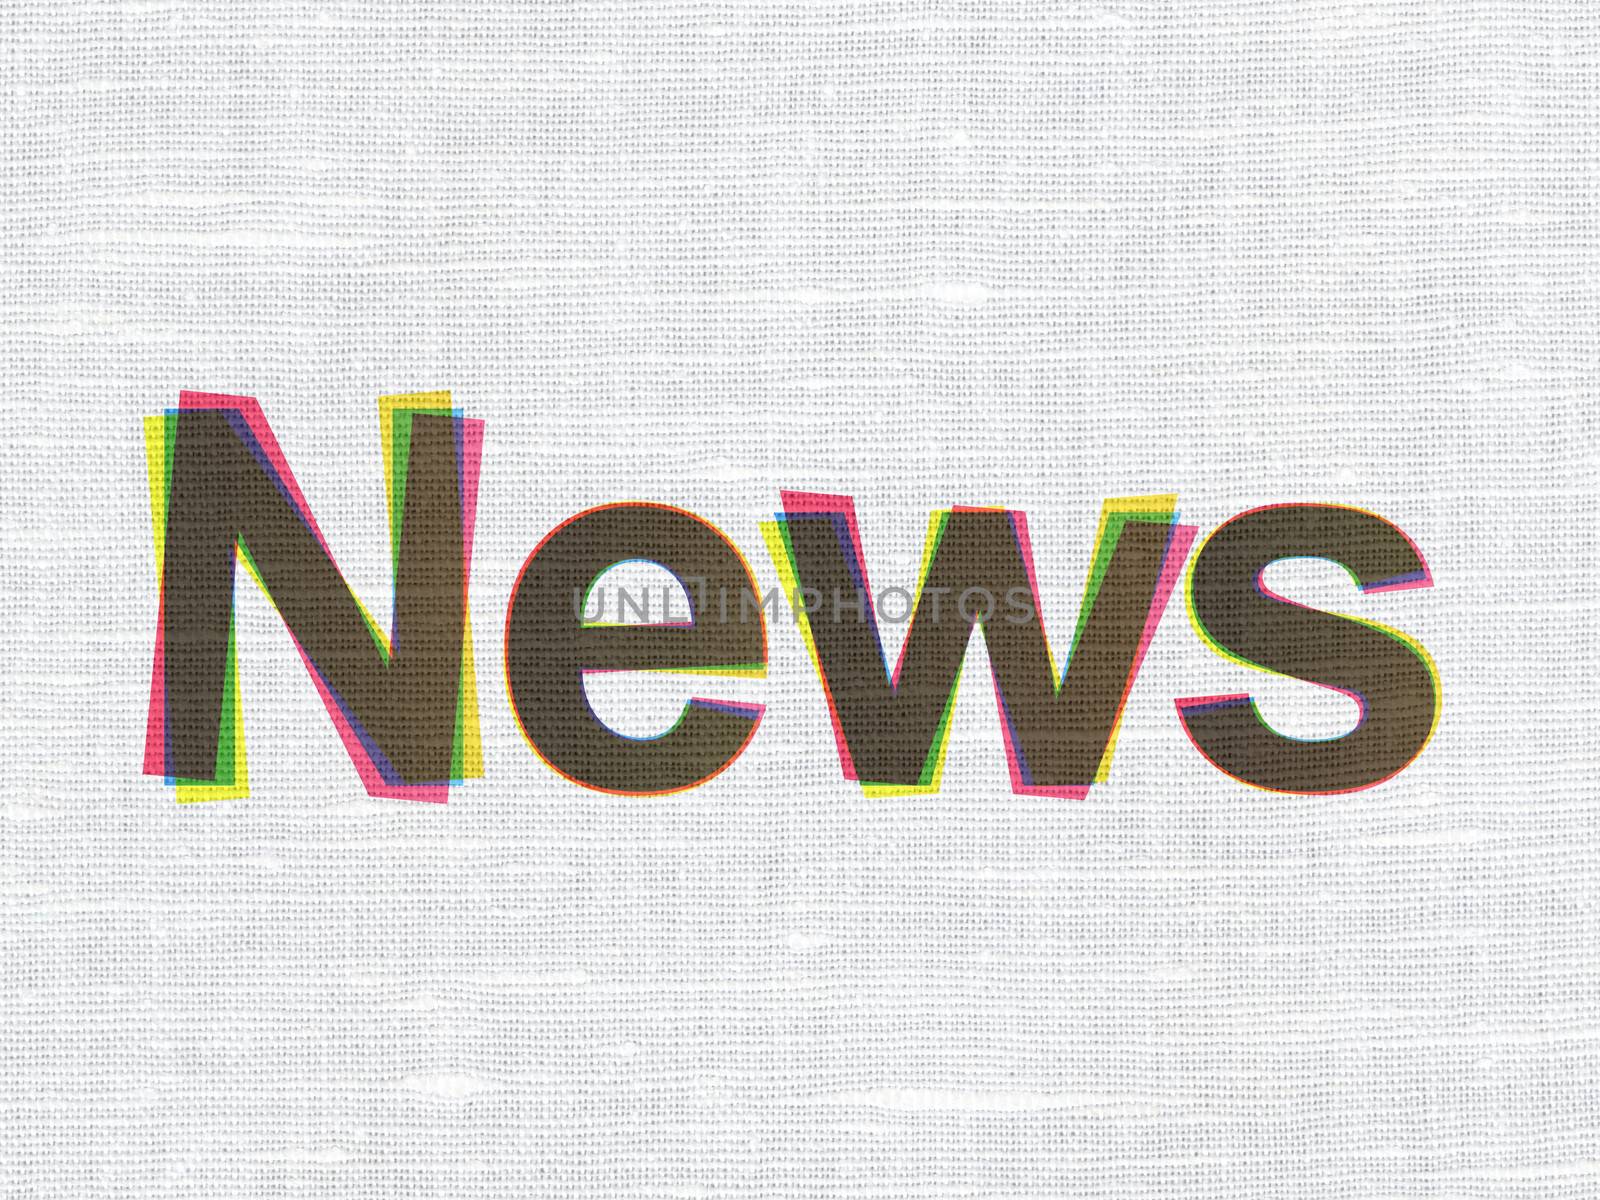 News concept: CMYK News on linen fabric texture background, 3d render